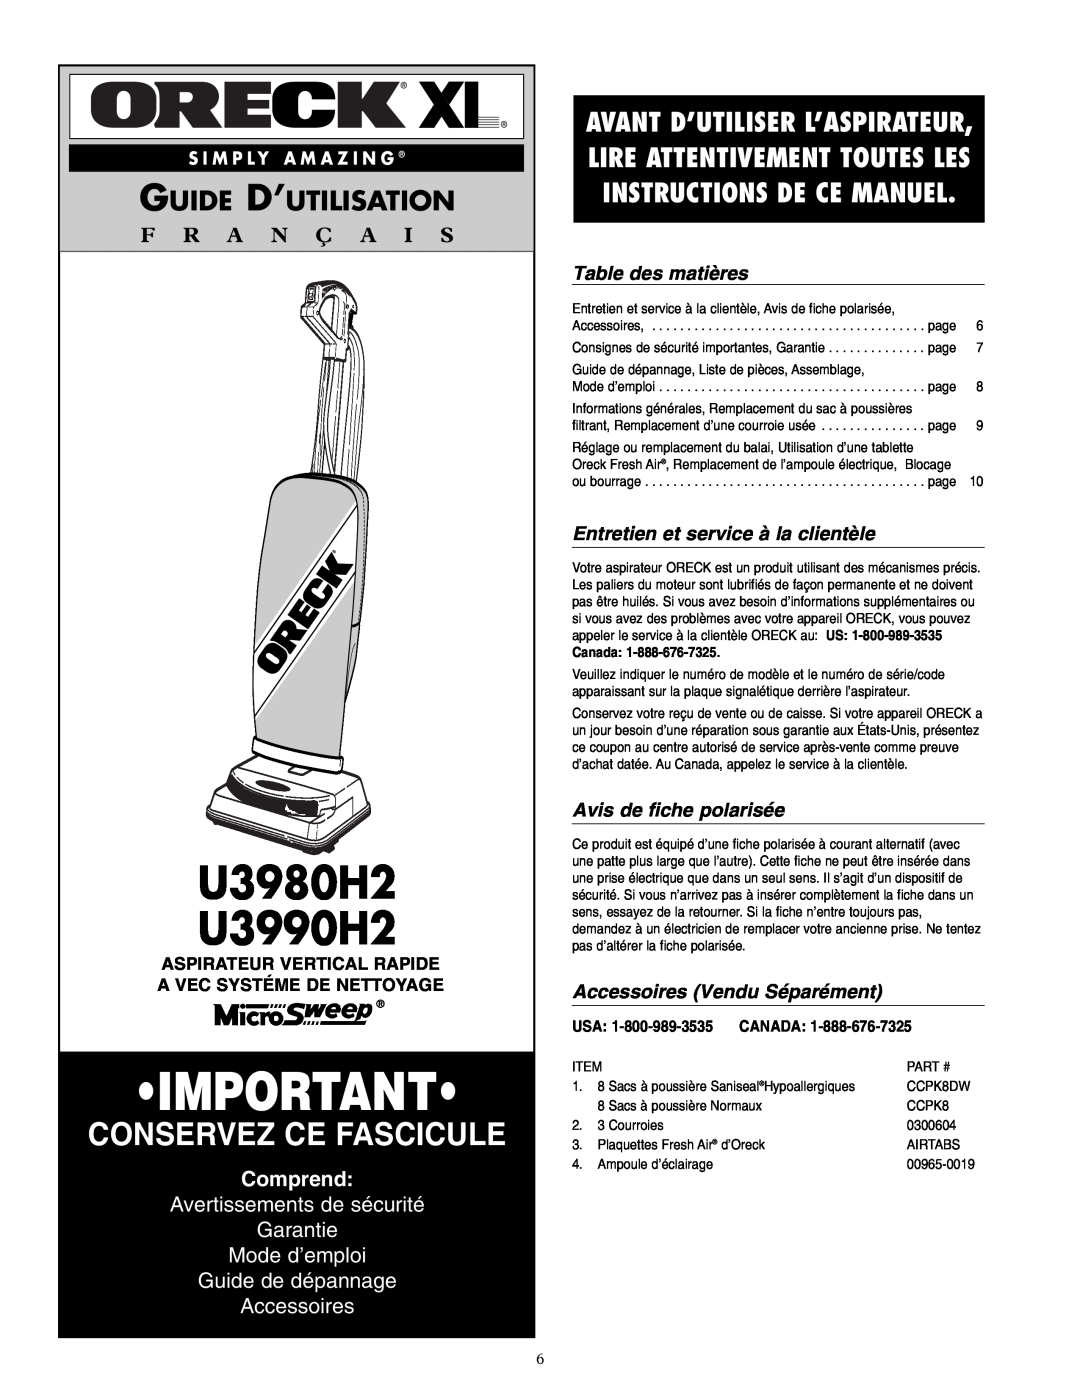 Oreck warranty U3980H2 U3990H2, Guide D’Utilisation, F R A N Ç A I S, Comprend, Guide de dépannage Accessoires, Canada 